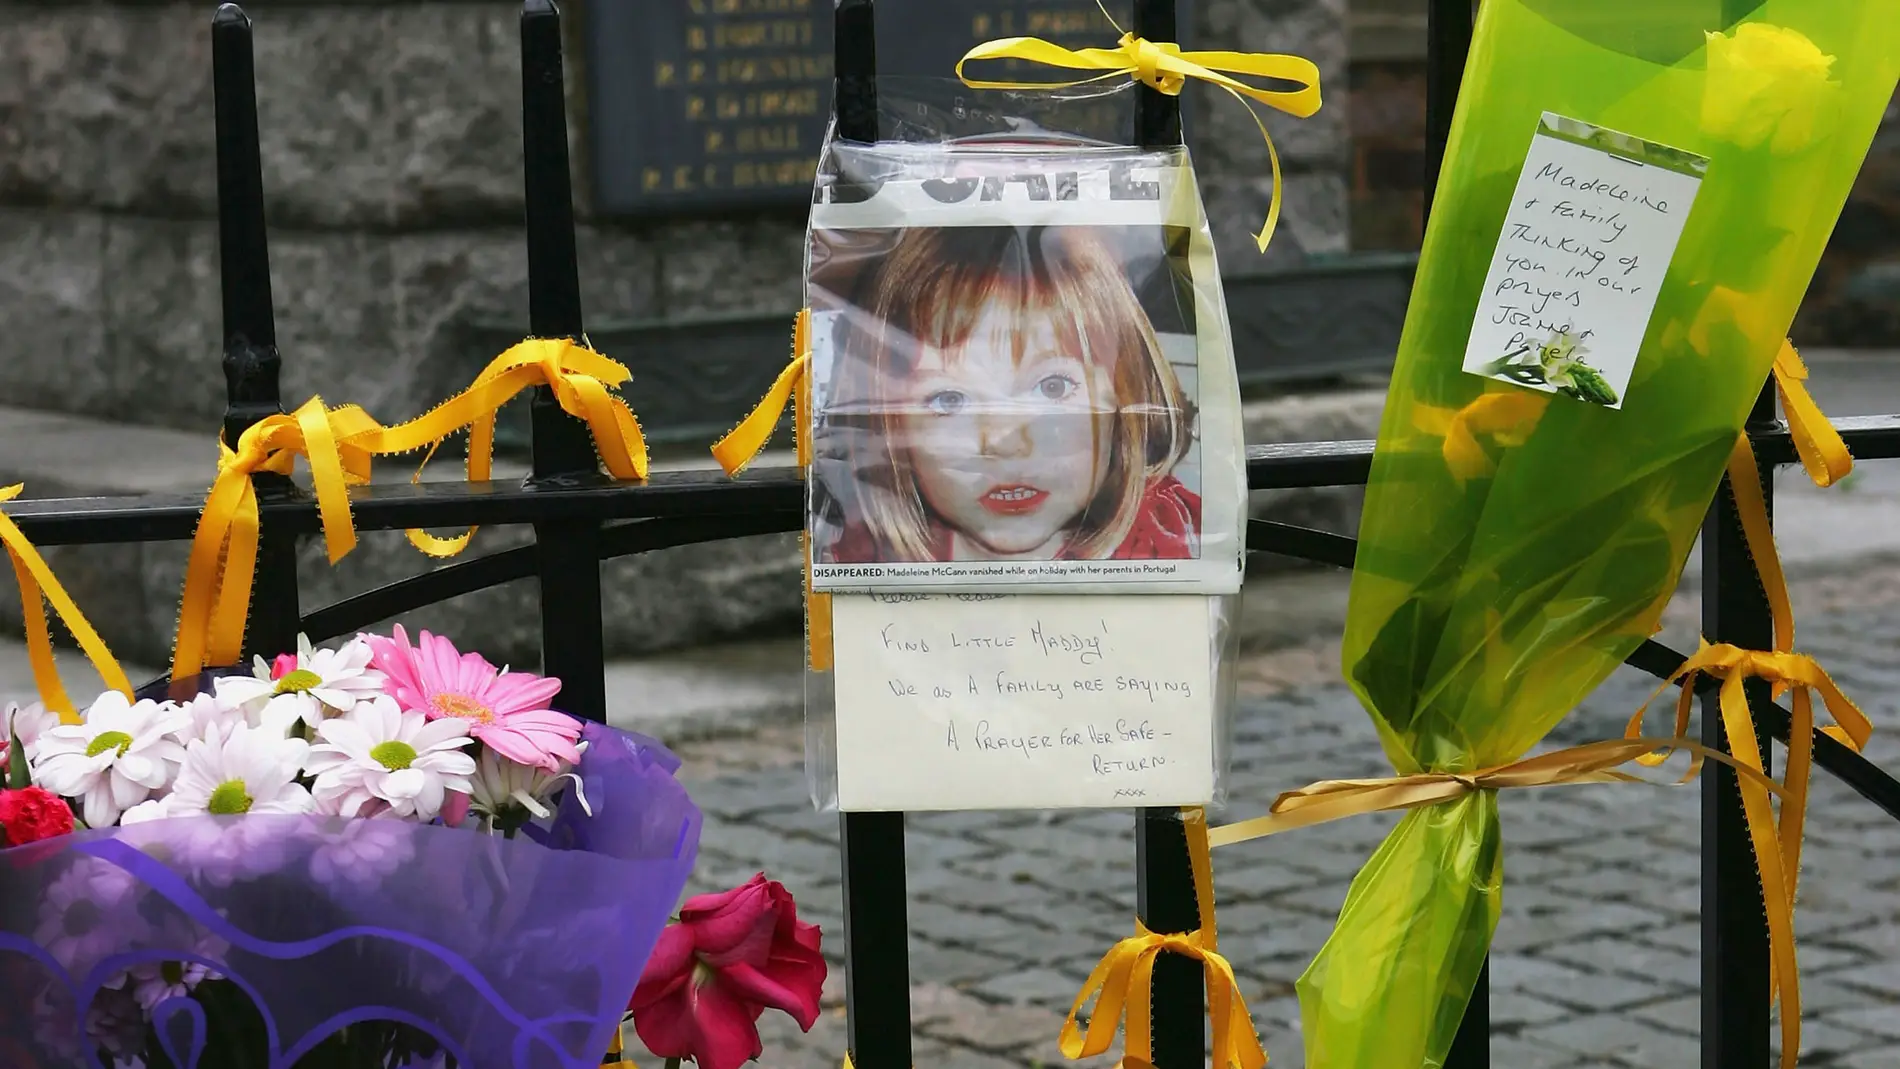 Mensajes de apoyo tras la desaparición de Madeleine McCann en Reino Unido.